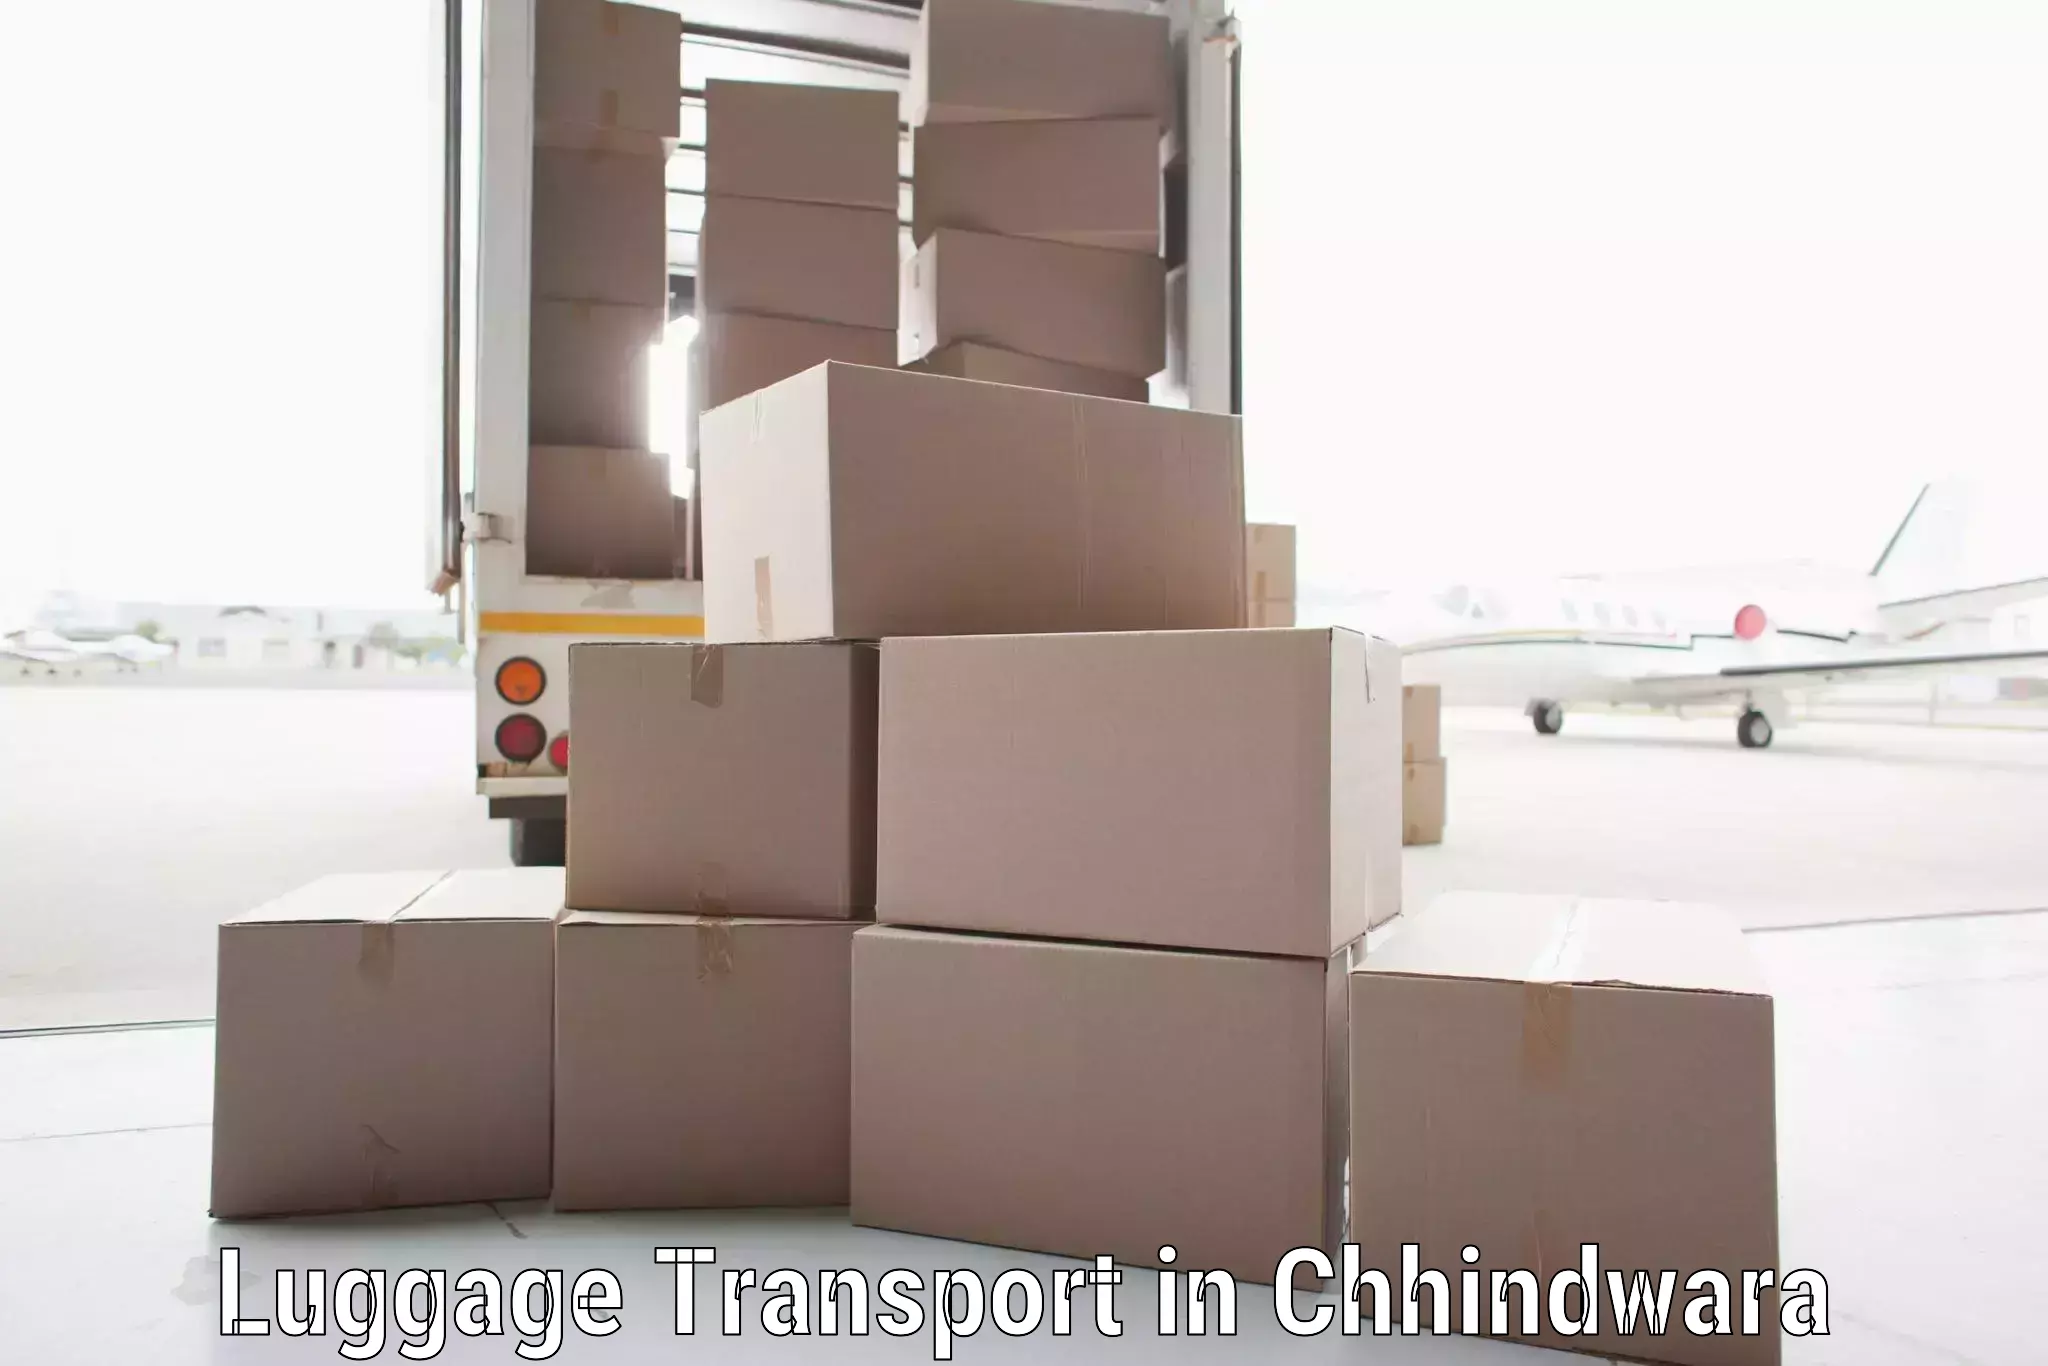 Group luggage shipping in Chhindwara